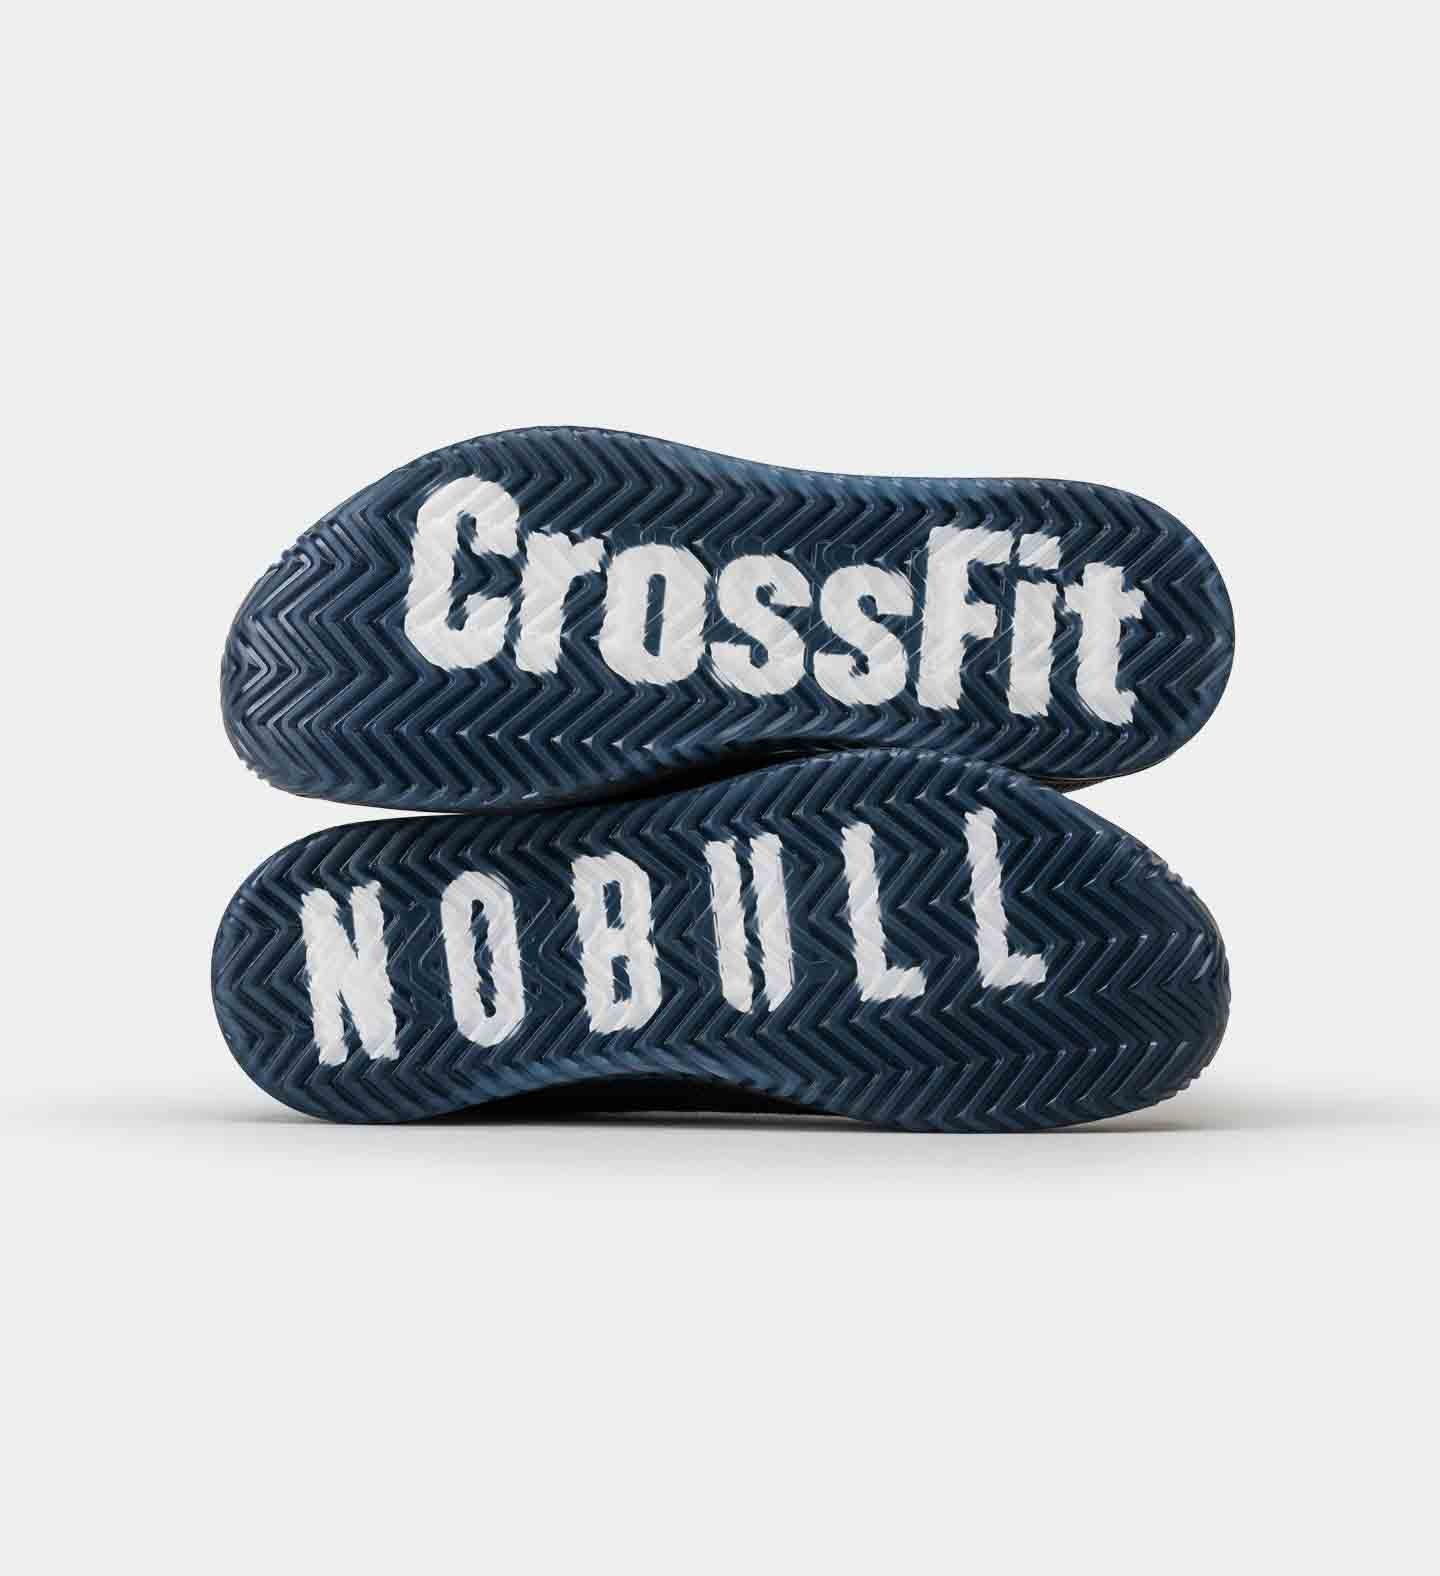 Best For Cross Training – NOBULL